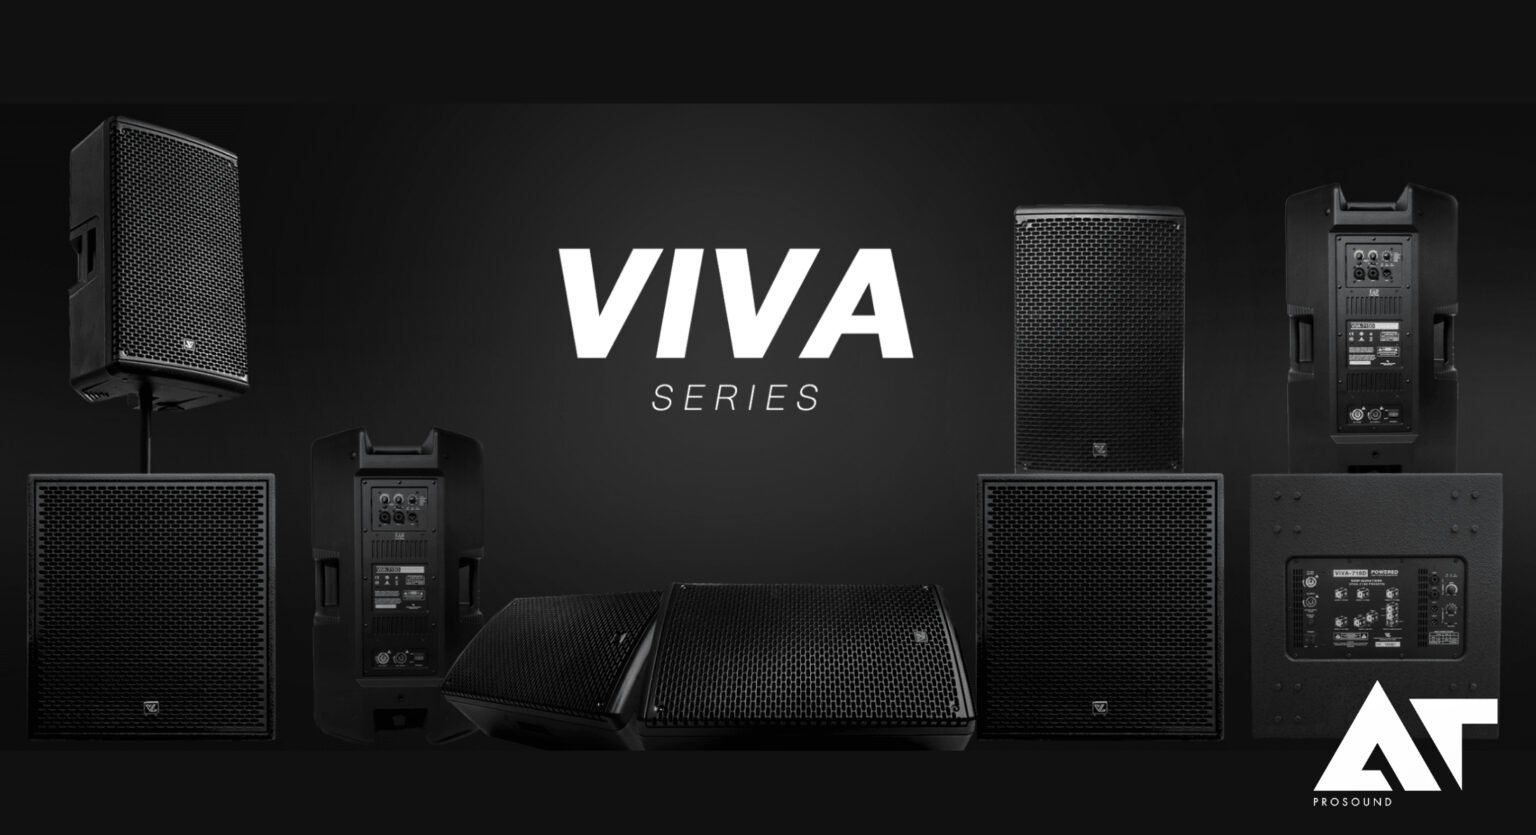 VIVA Series